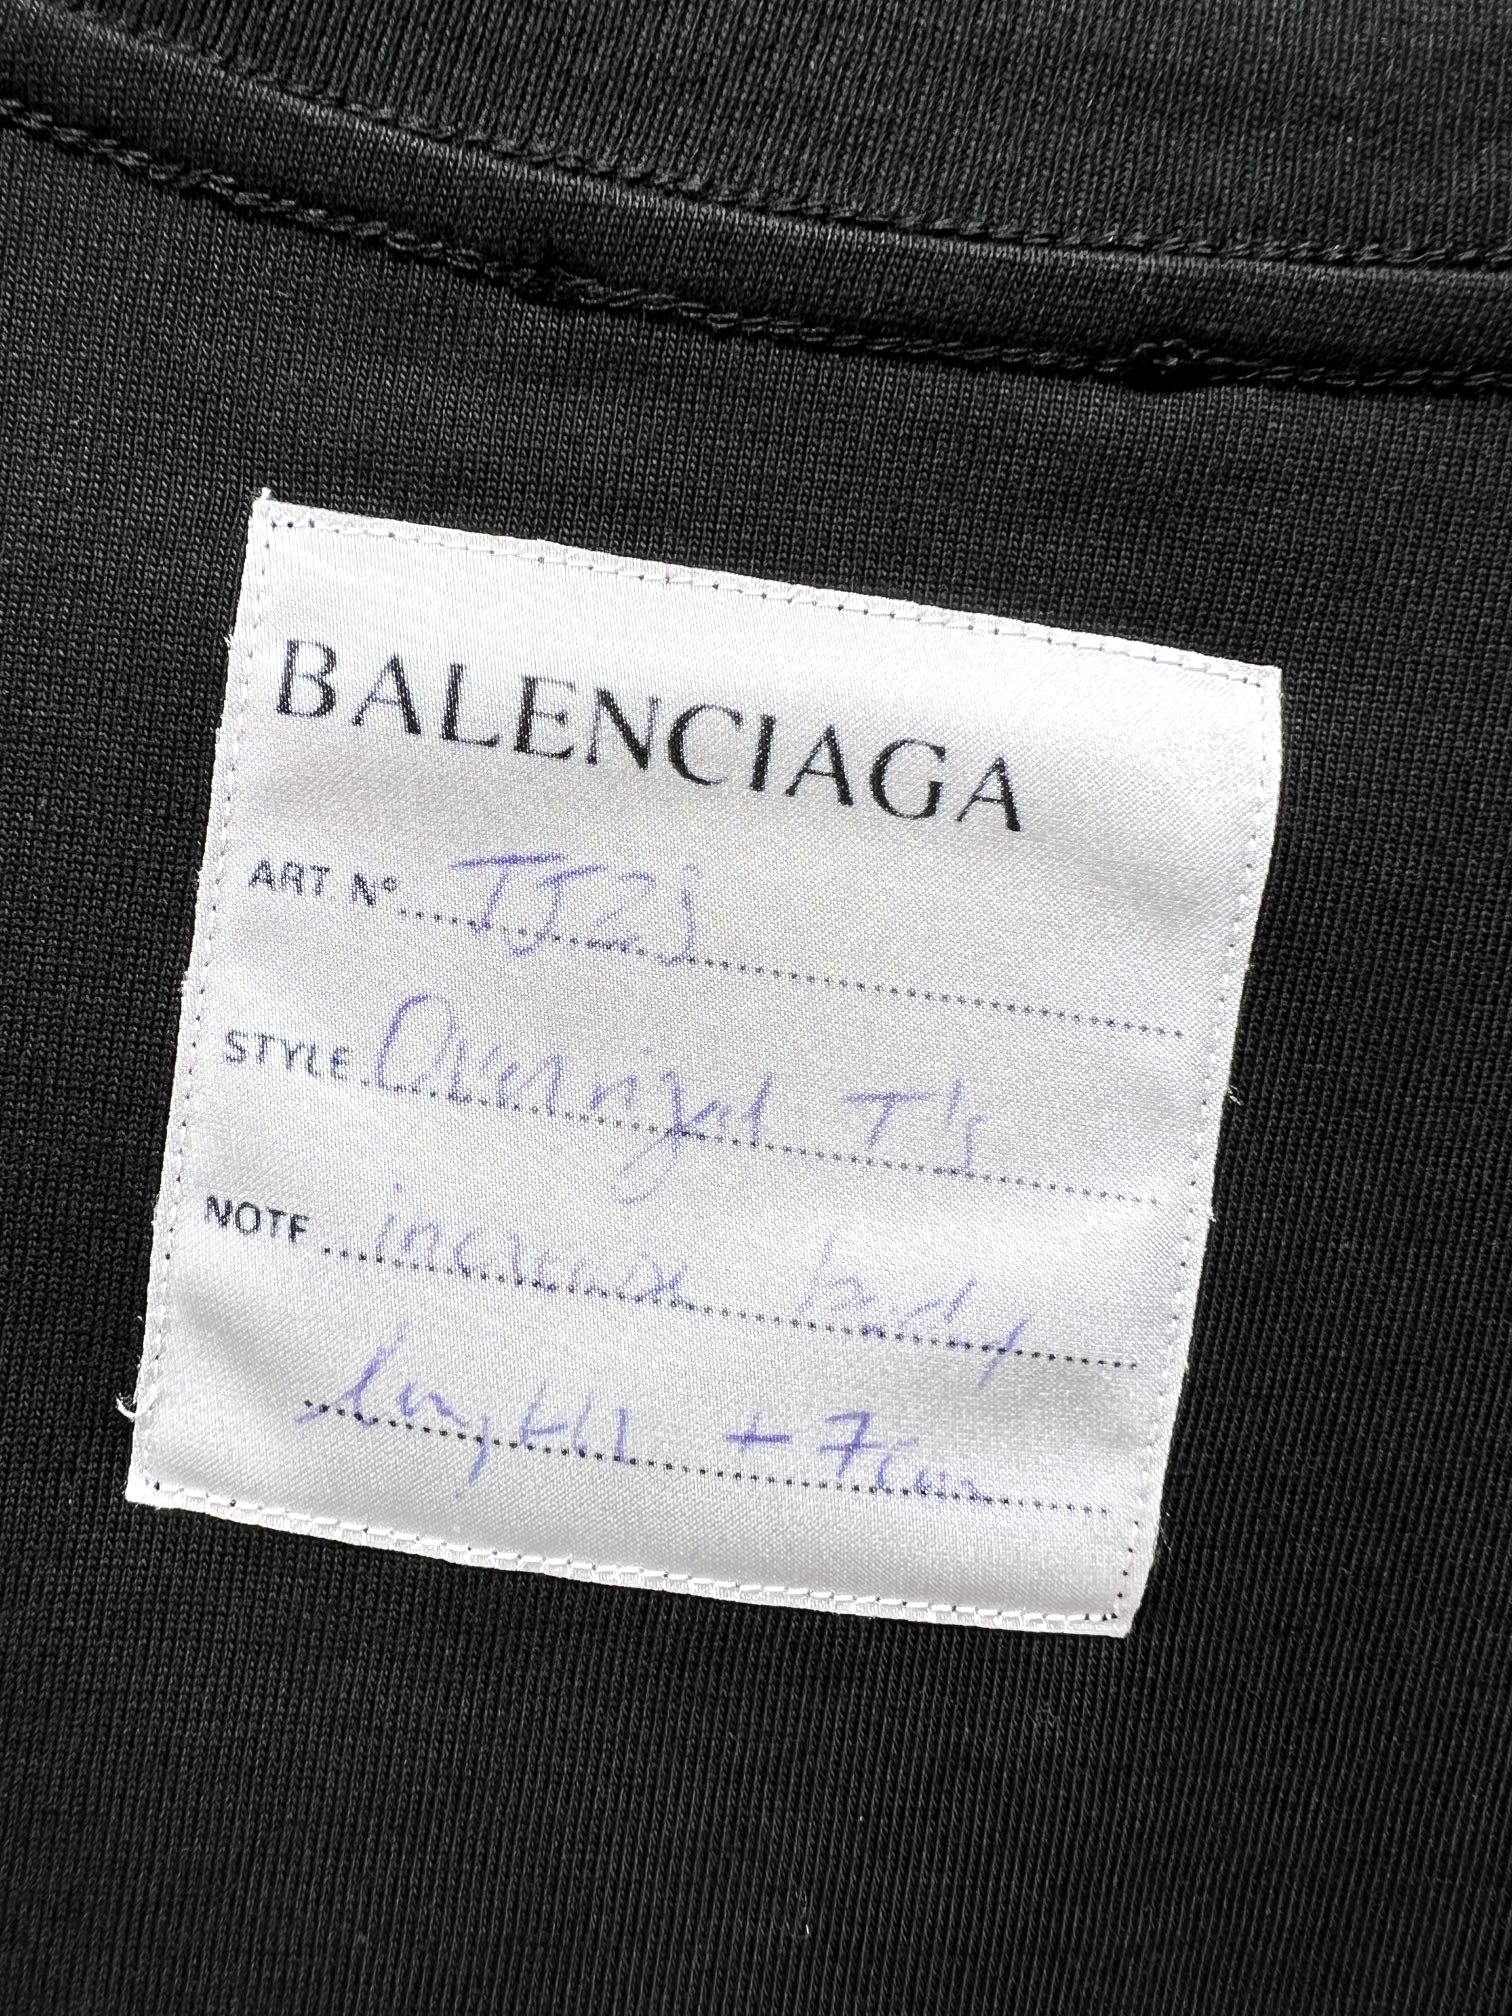 最新到着‼バレンシアガ 夏服コピー tシャツ偽物 ロゴプリント トップス 短袖 純綿 男女兼用 シンプル ブラック_9